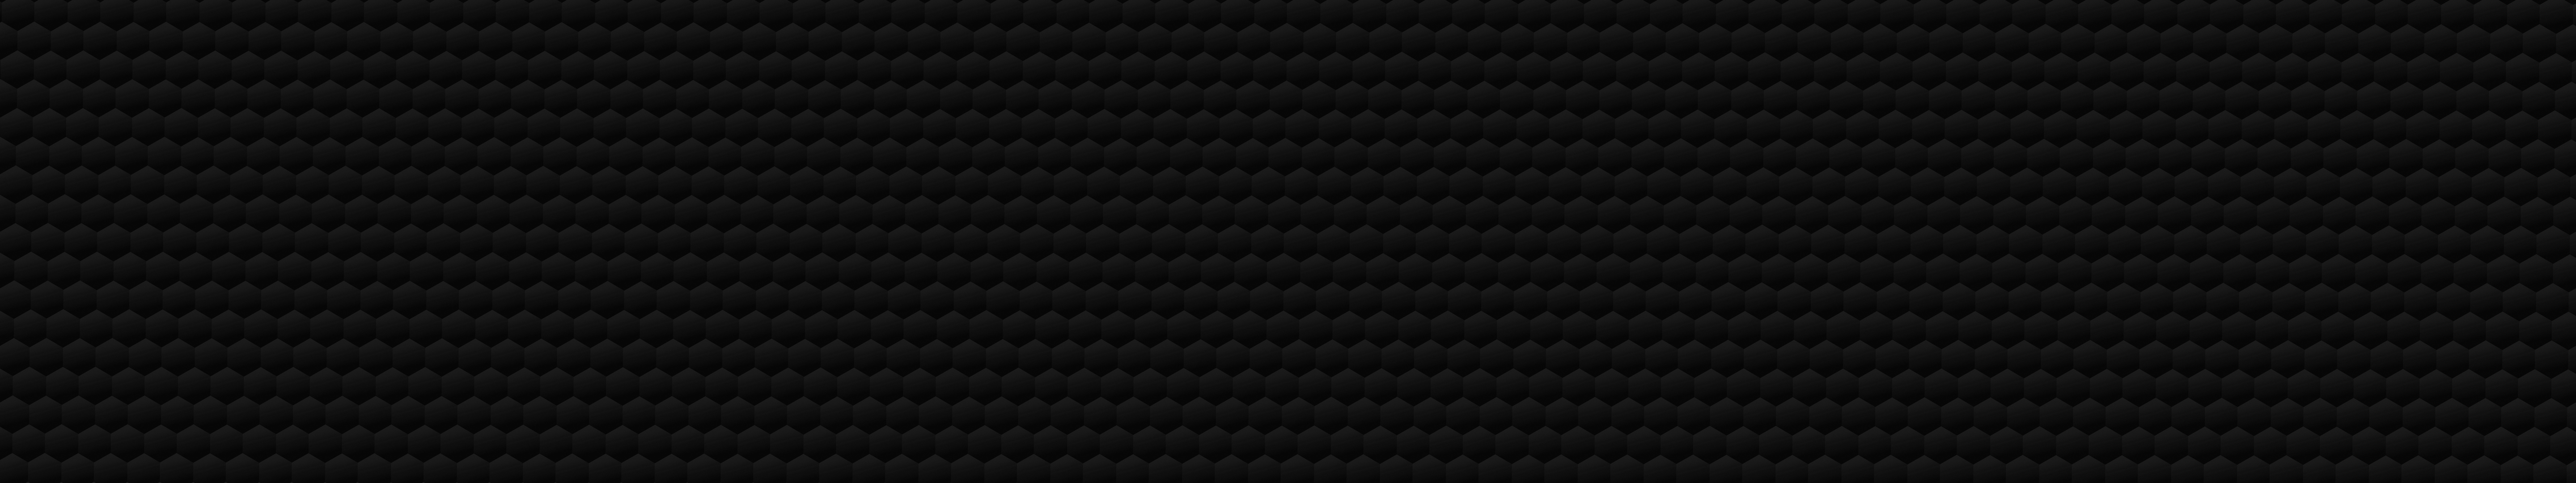 Dark Gray Honeyb Pattern Desktop Wallpaper